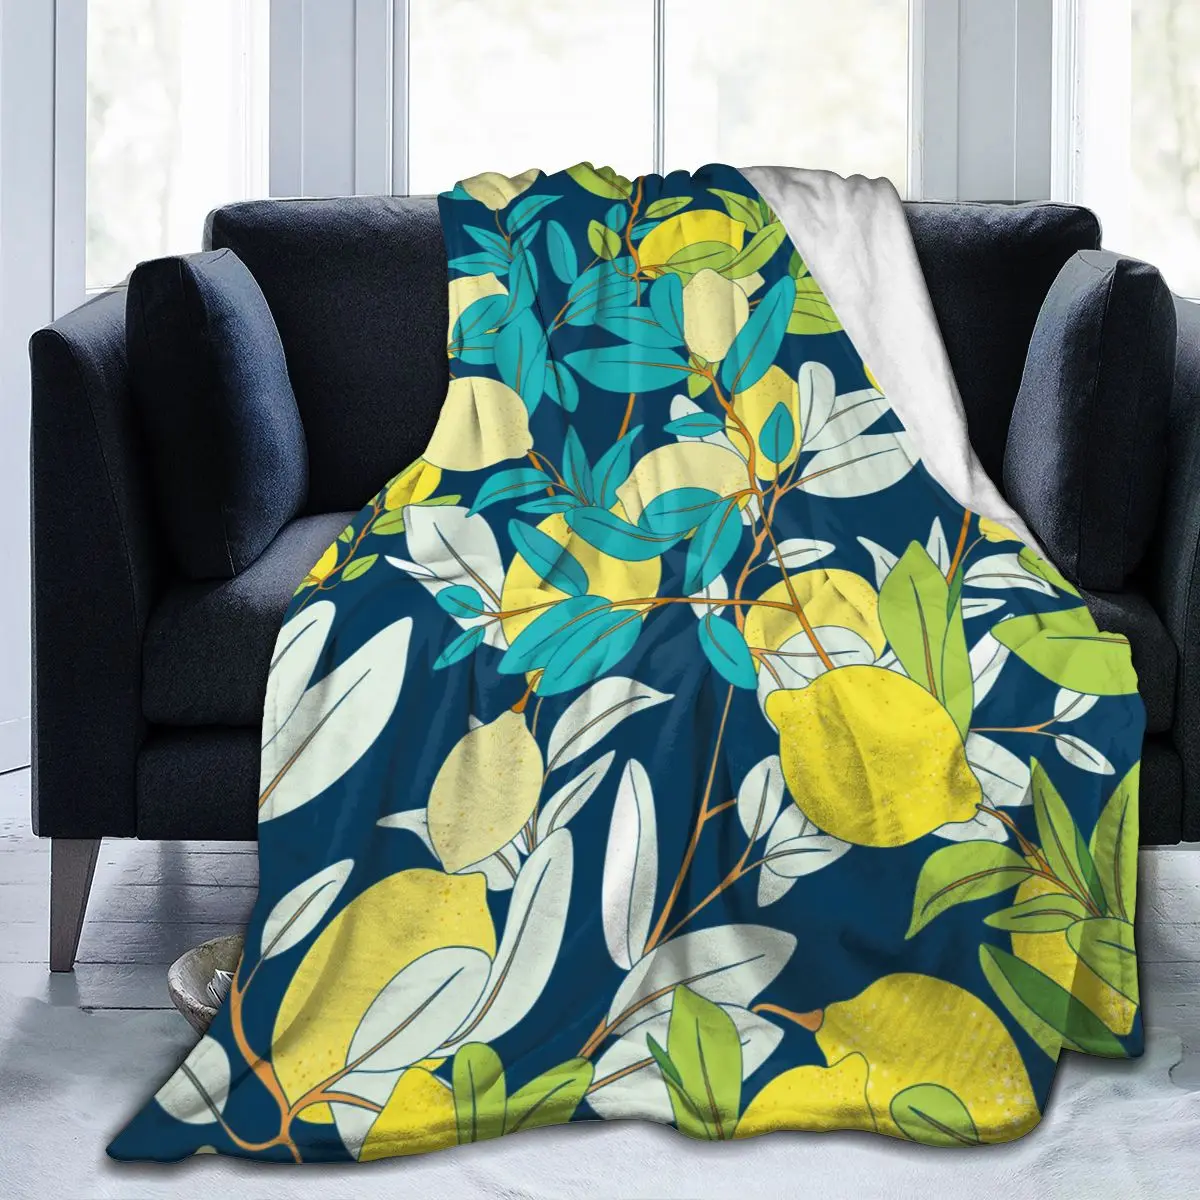 

Мягкое теплое фланелевое одеяло, винтажное, с растительным рисунком лимона, переносное, зимнее, тонкое покрывало для кровати, дивана